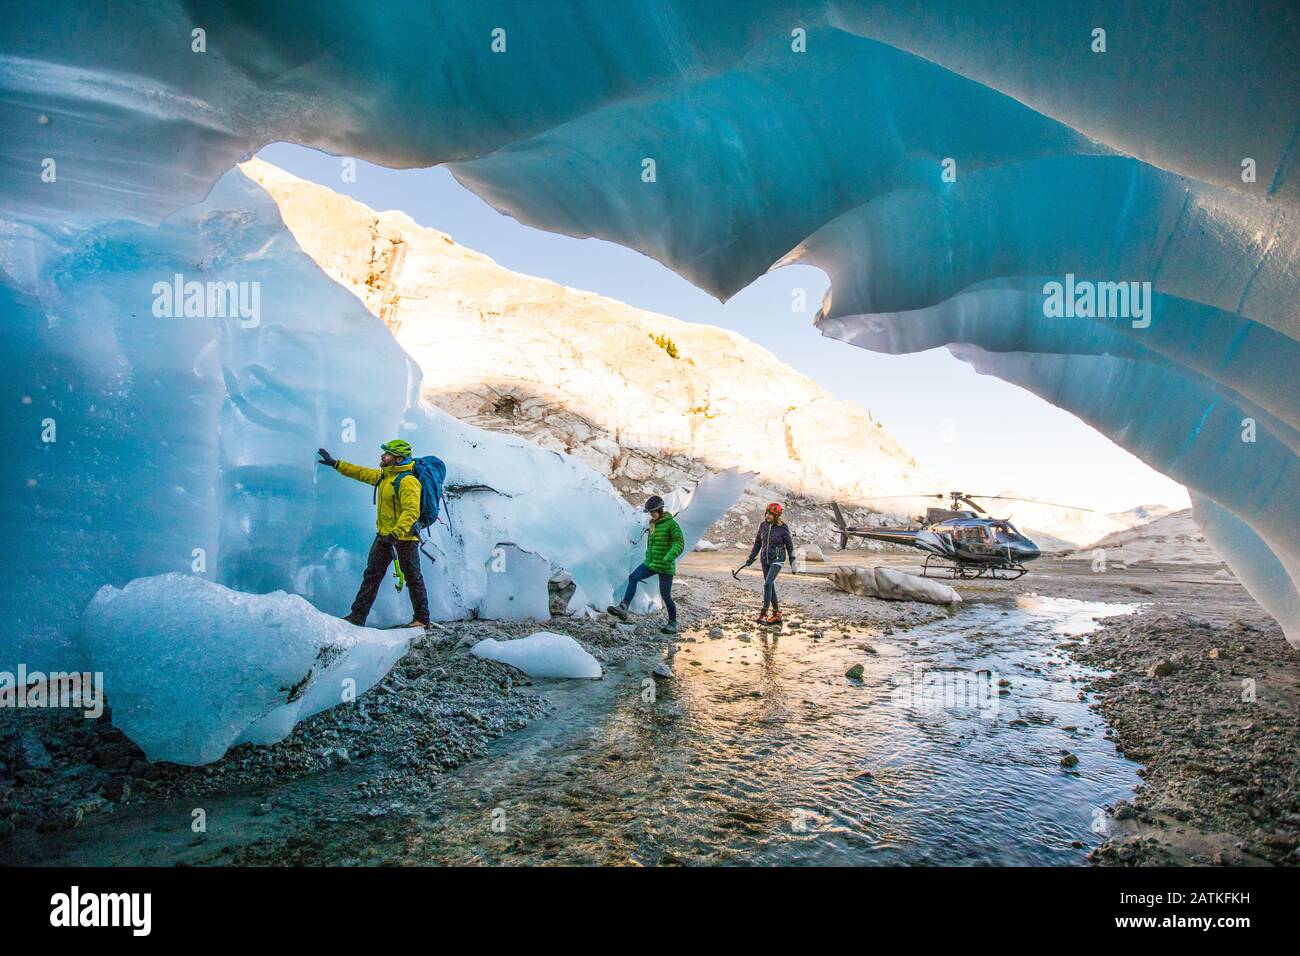 Explorers enter a glacial cave near Vancouver, B.C. Stock Photo